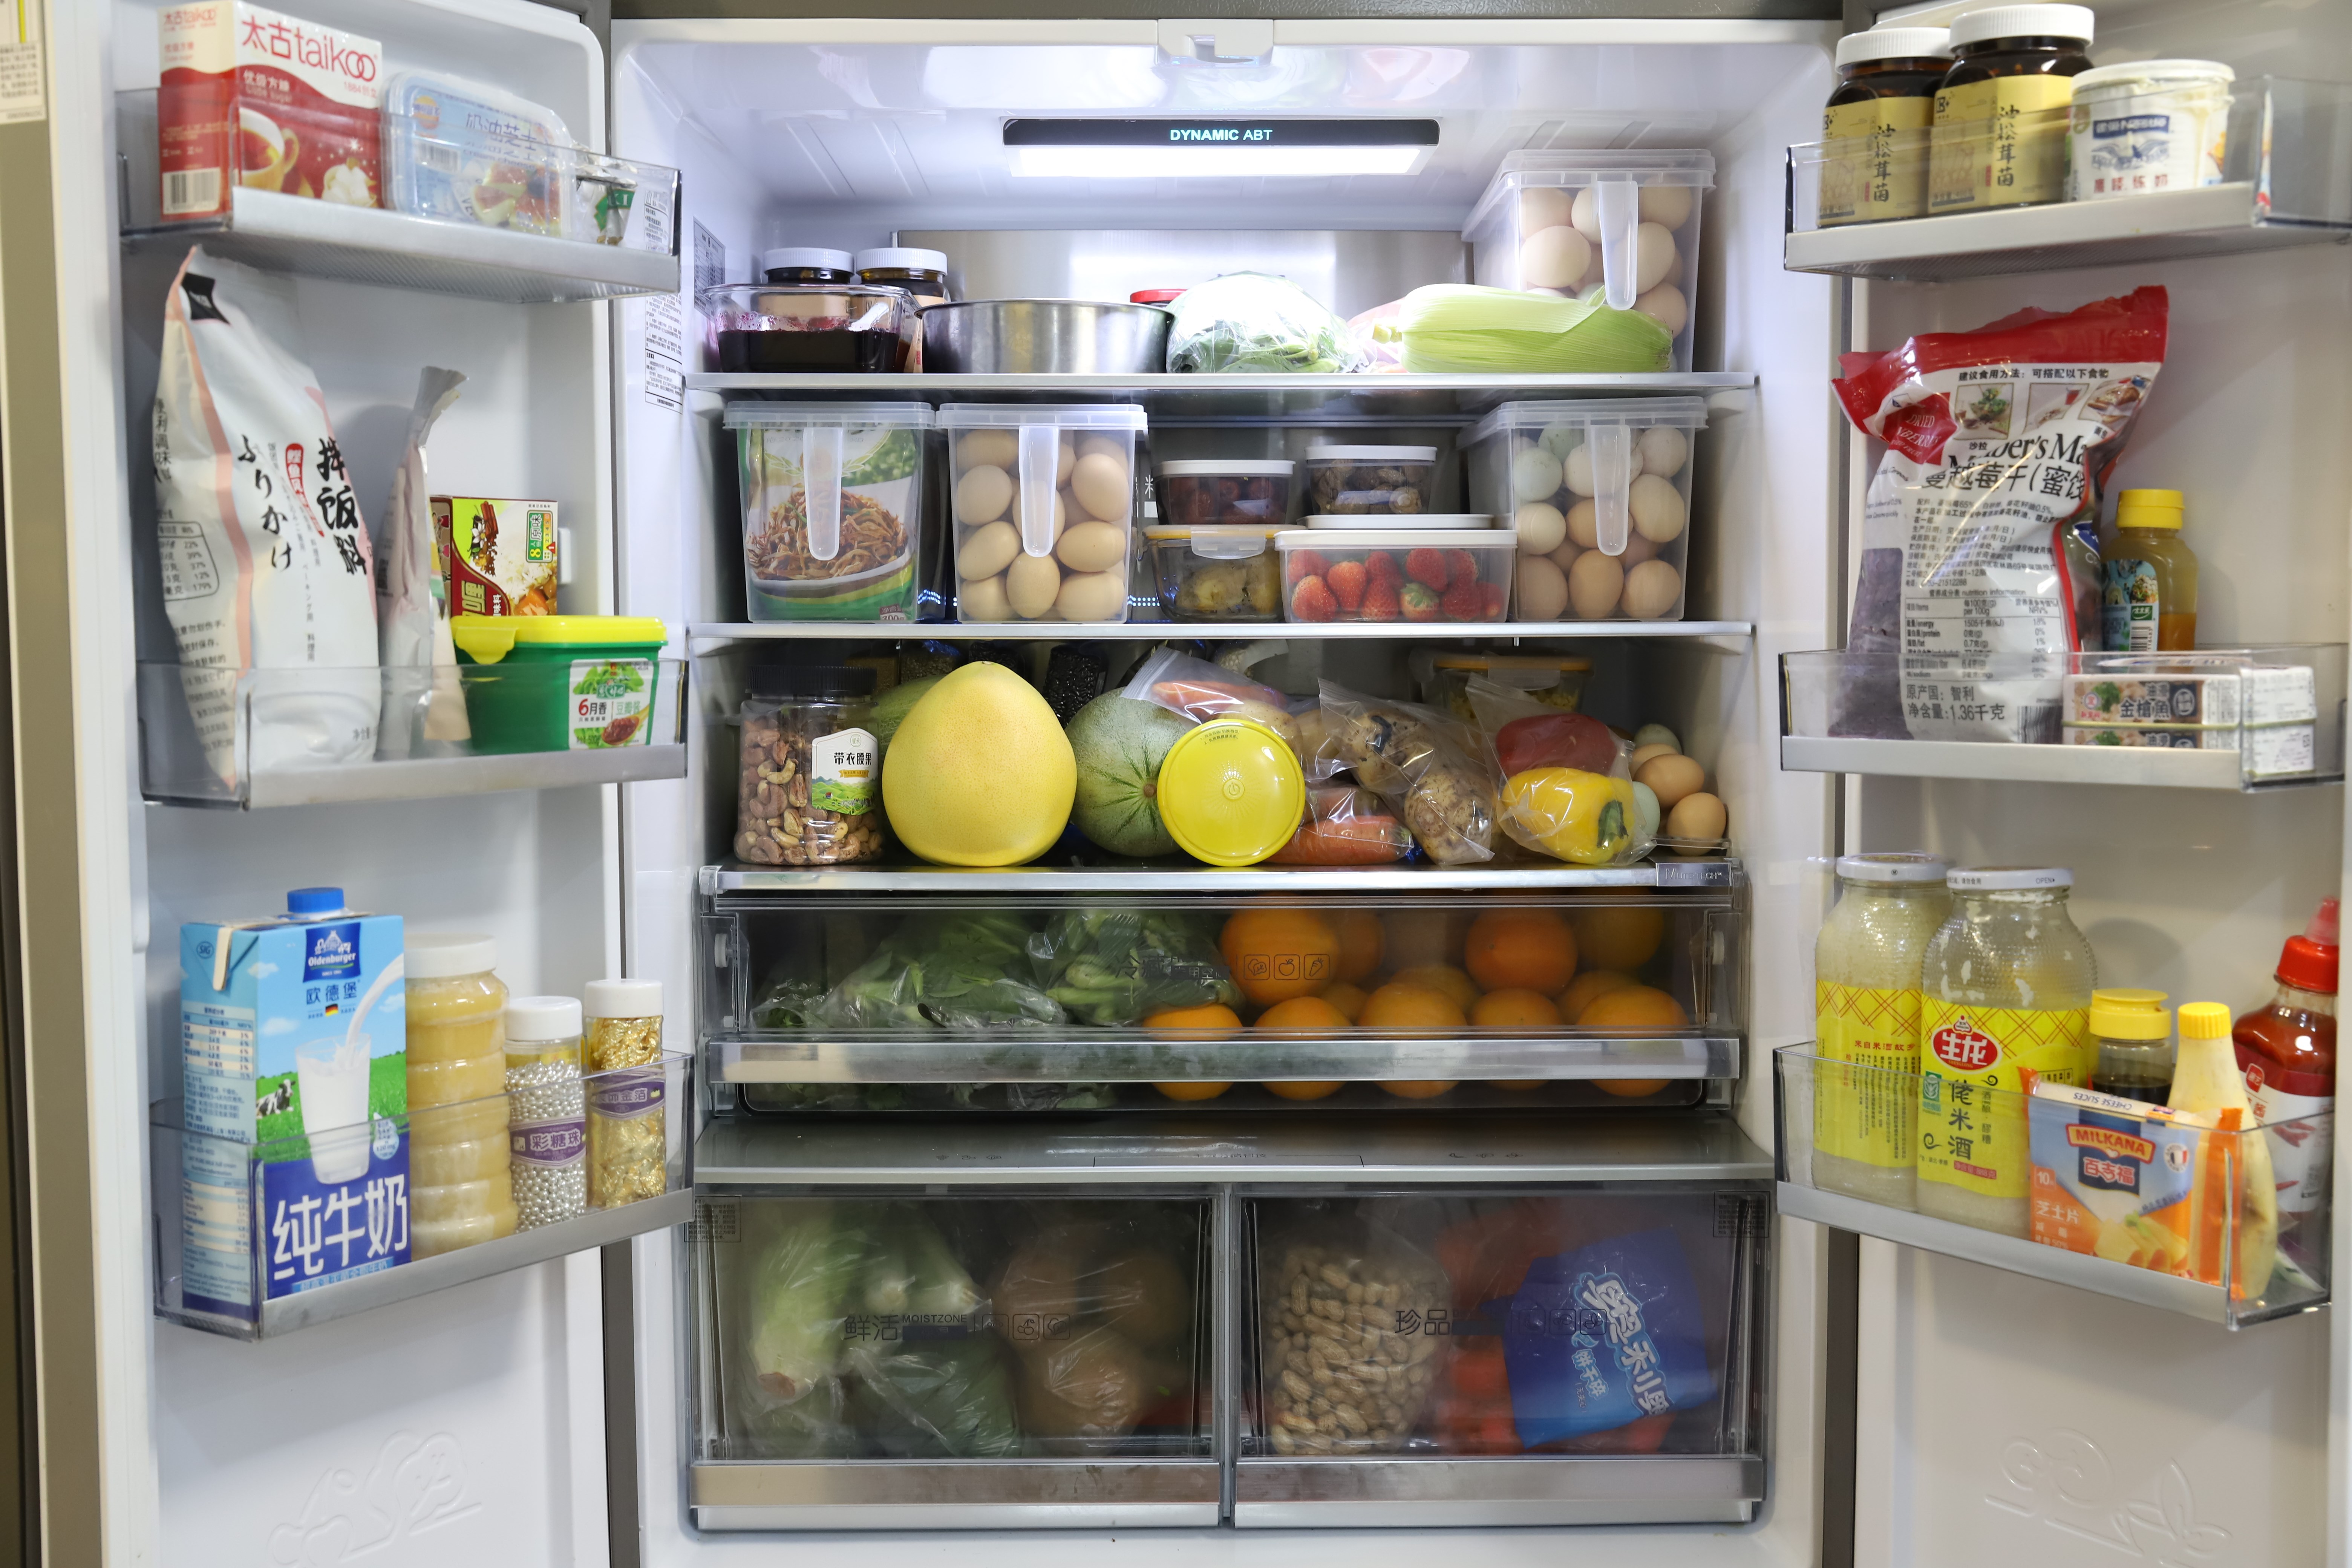 全方位消灭有害细菌滋生的困扰,高效率完成冰箱的净化杀菌,让冰箱内部